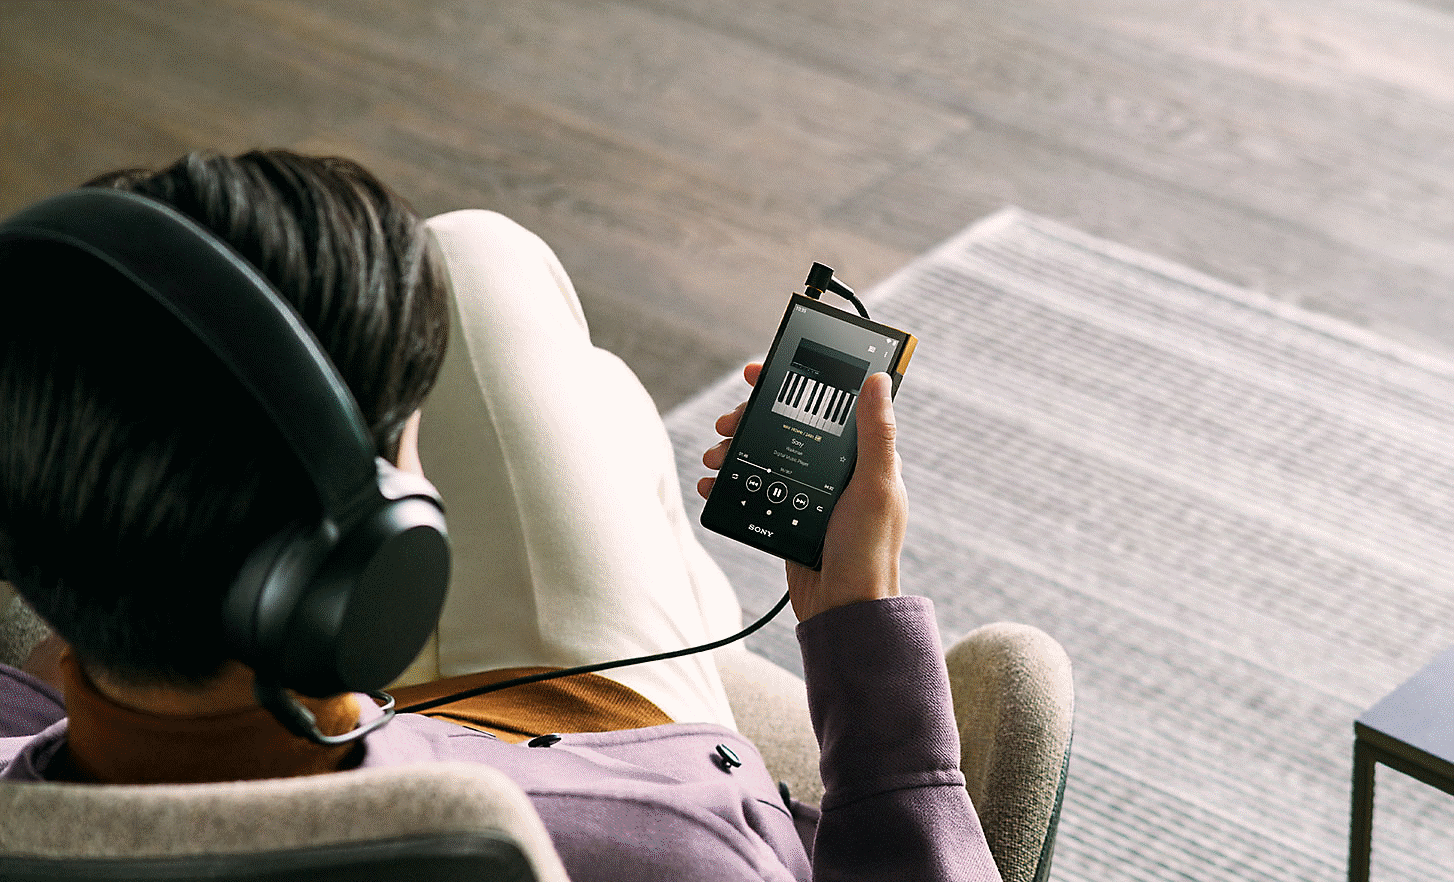 NW-ZX707을 쥐고 소니 헤드폰으로 음악을 듣고 있는 사람의 이미지.